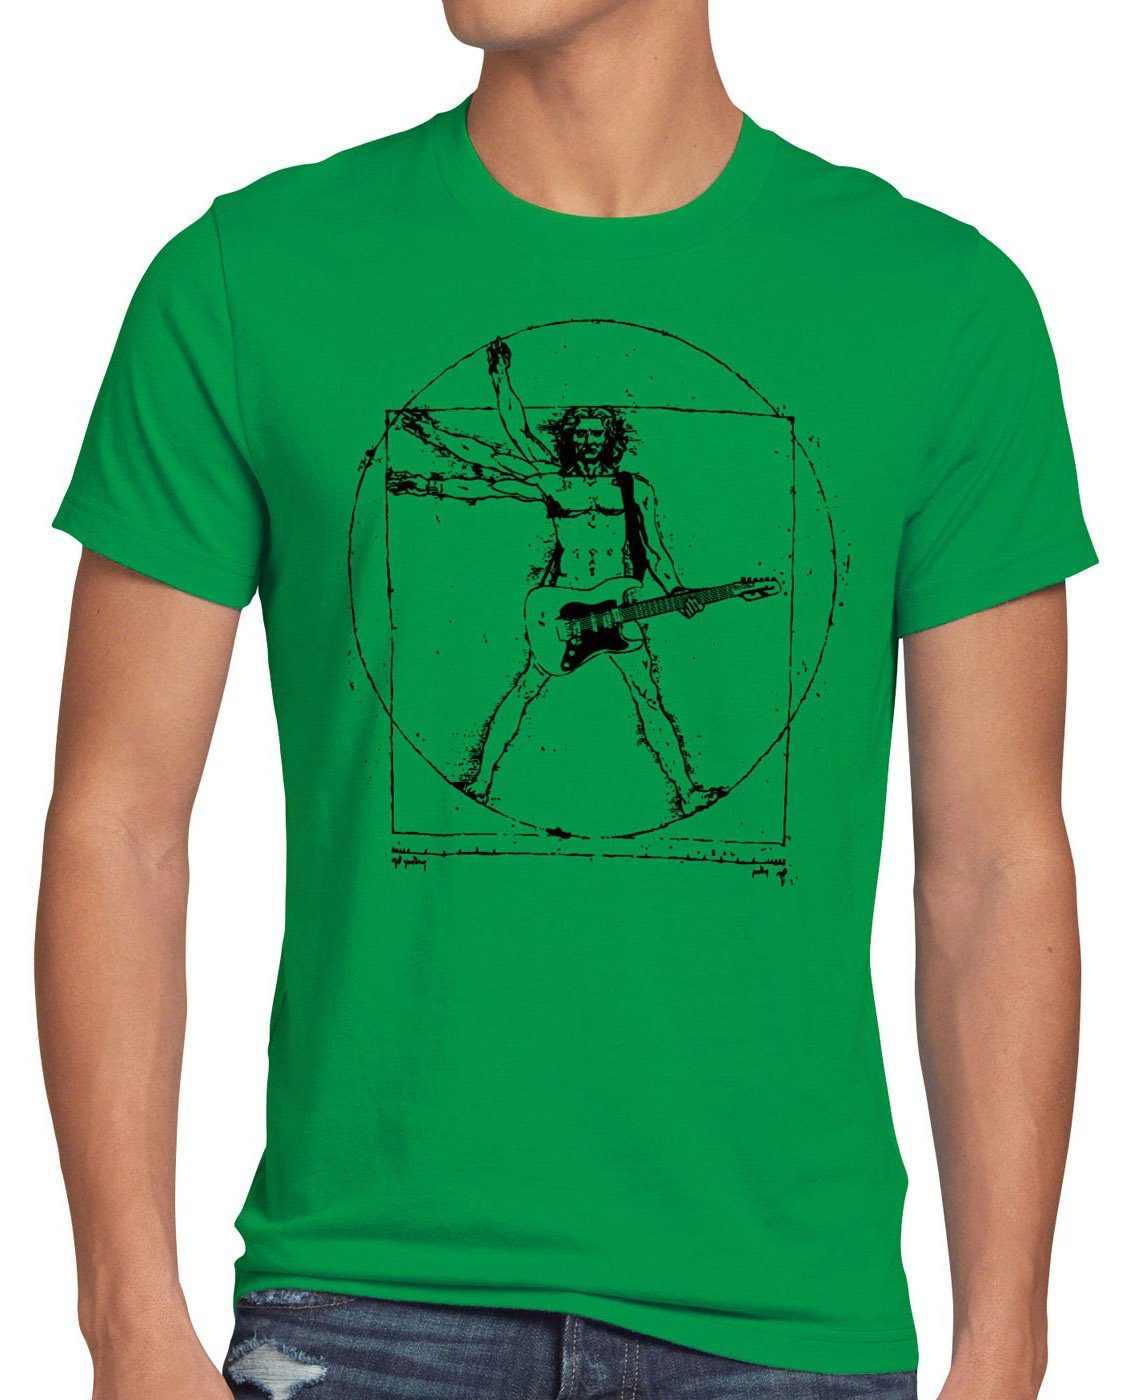 style3 Print-Shirt Herren T-Shirt Da Vinci Rock T-Shirt musik festival gitarre vinyl metal open air wacken mensch grün